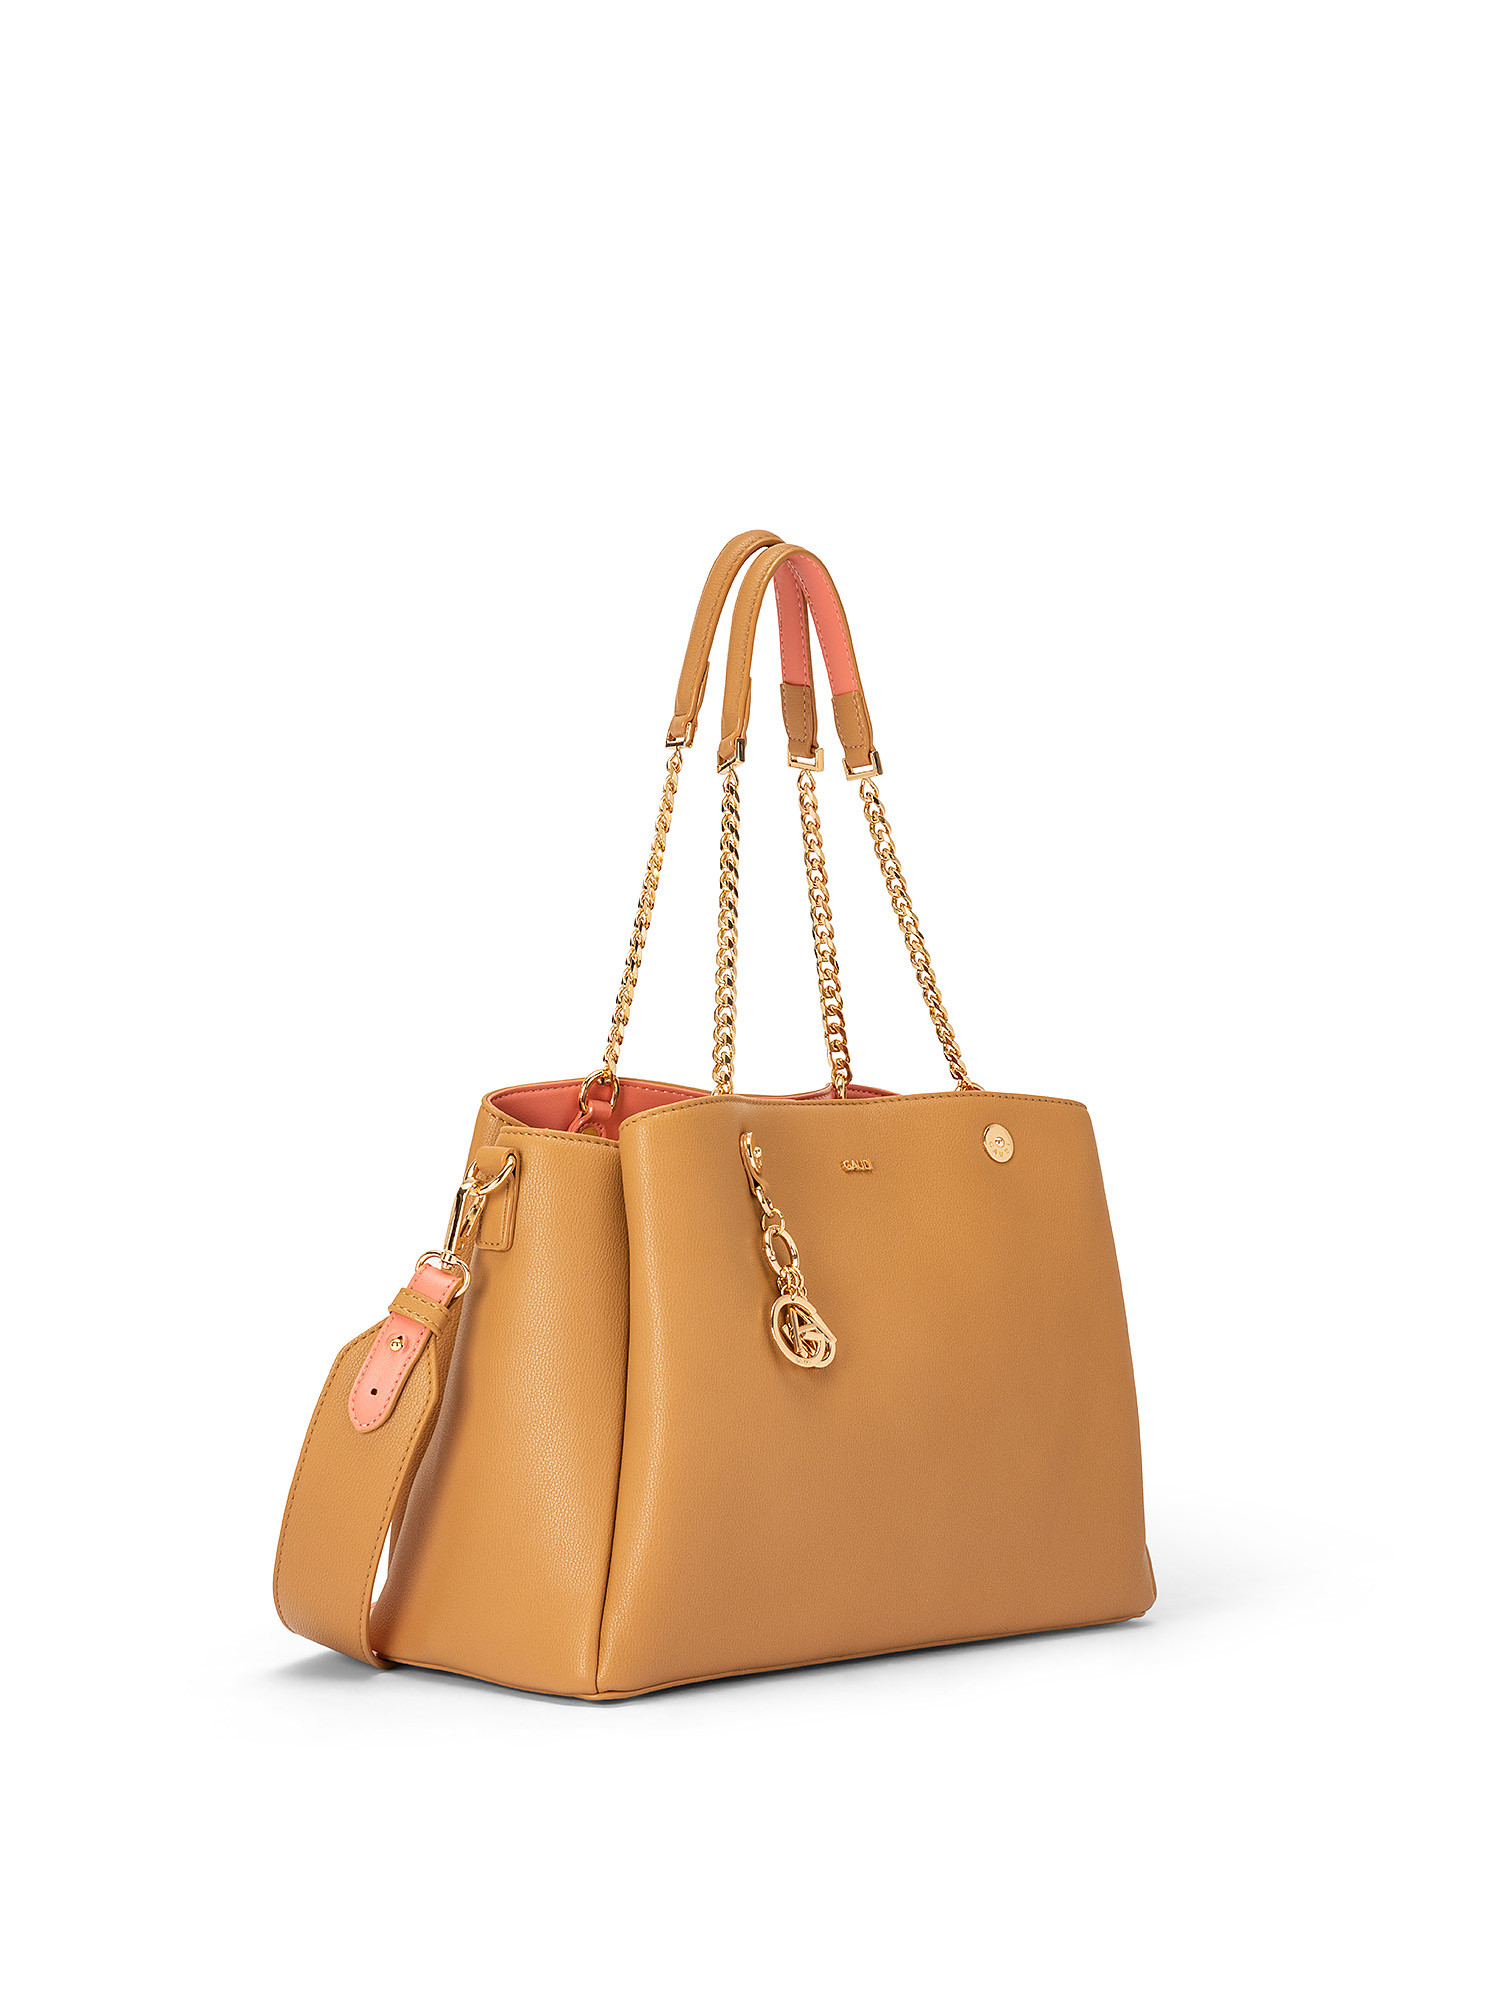 Shopping bag Tonya, Marrone cuoio, large image number 1